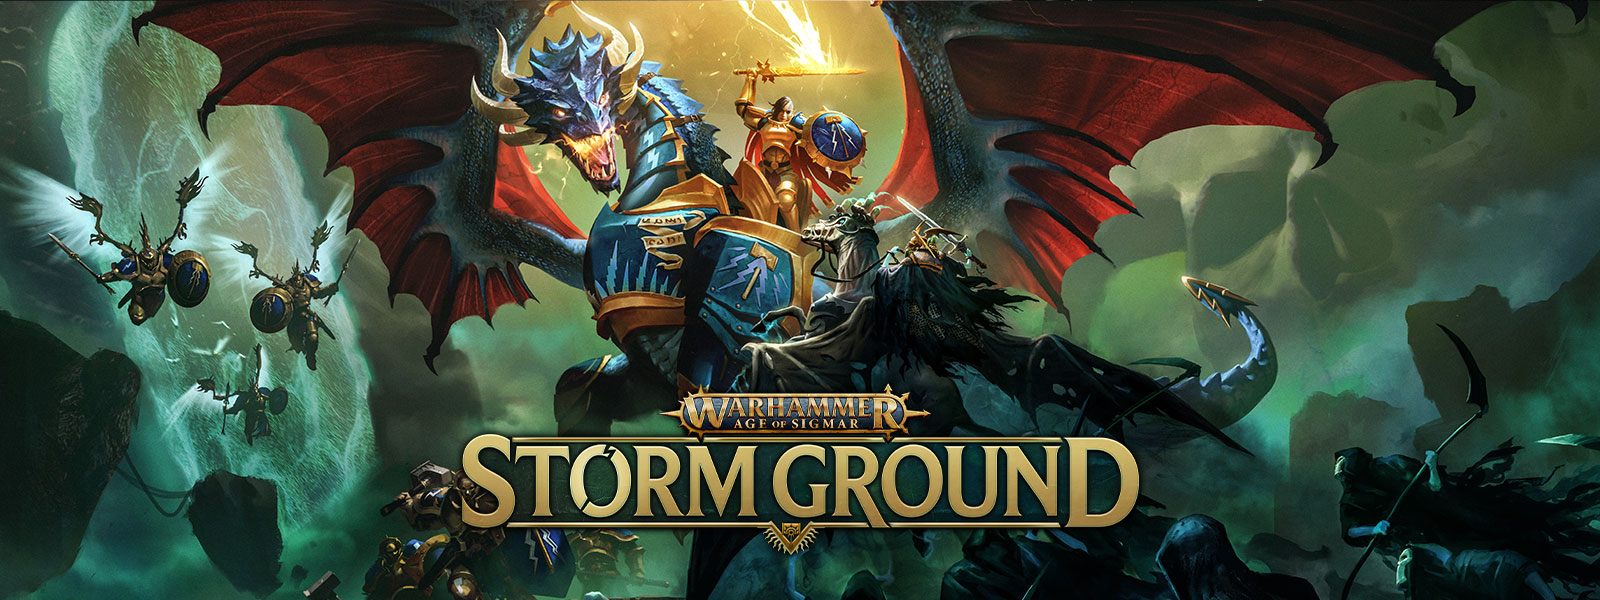 Warhammer Age of Sigmar: Storm Ground, Um guerreiro montado em um dragão com armadura luta voando contra um exército esquelético.